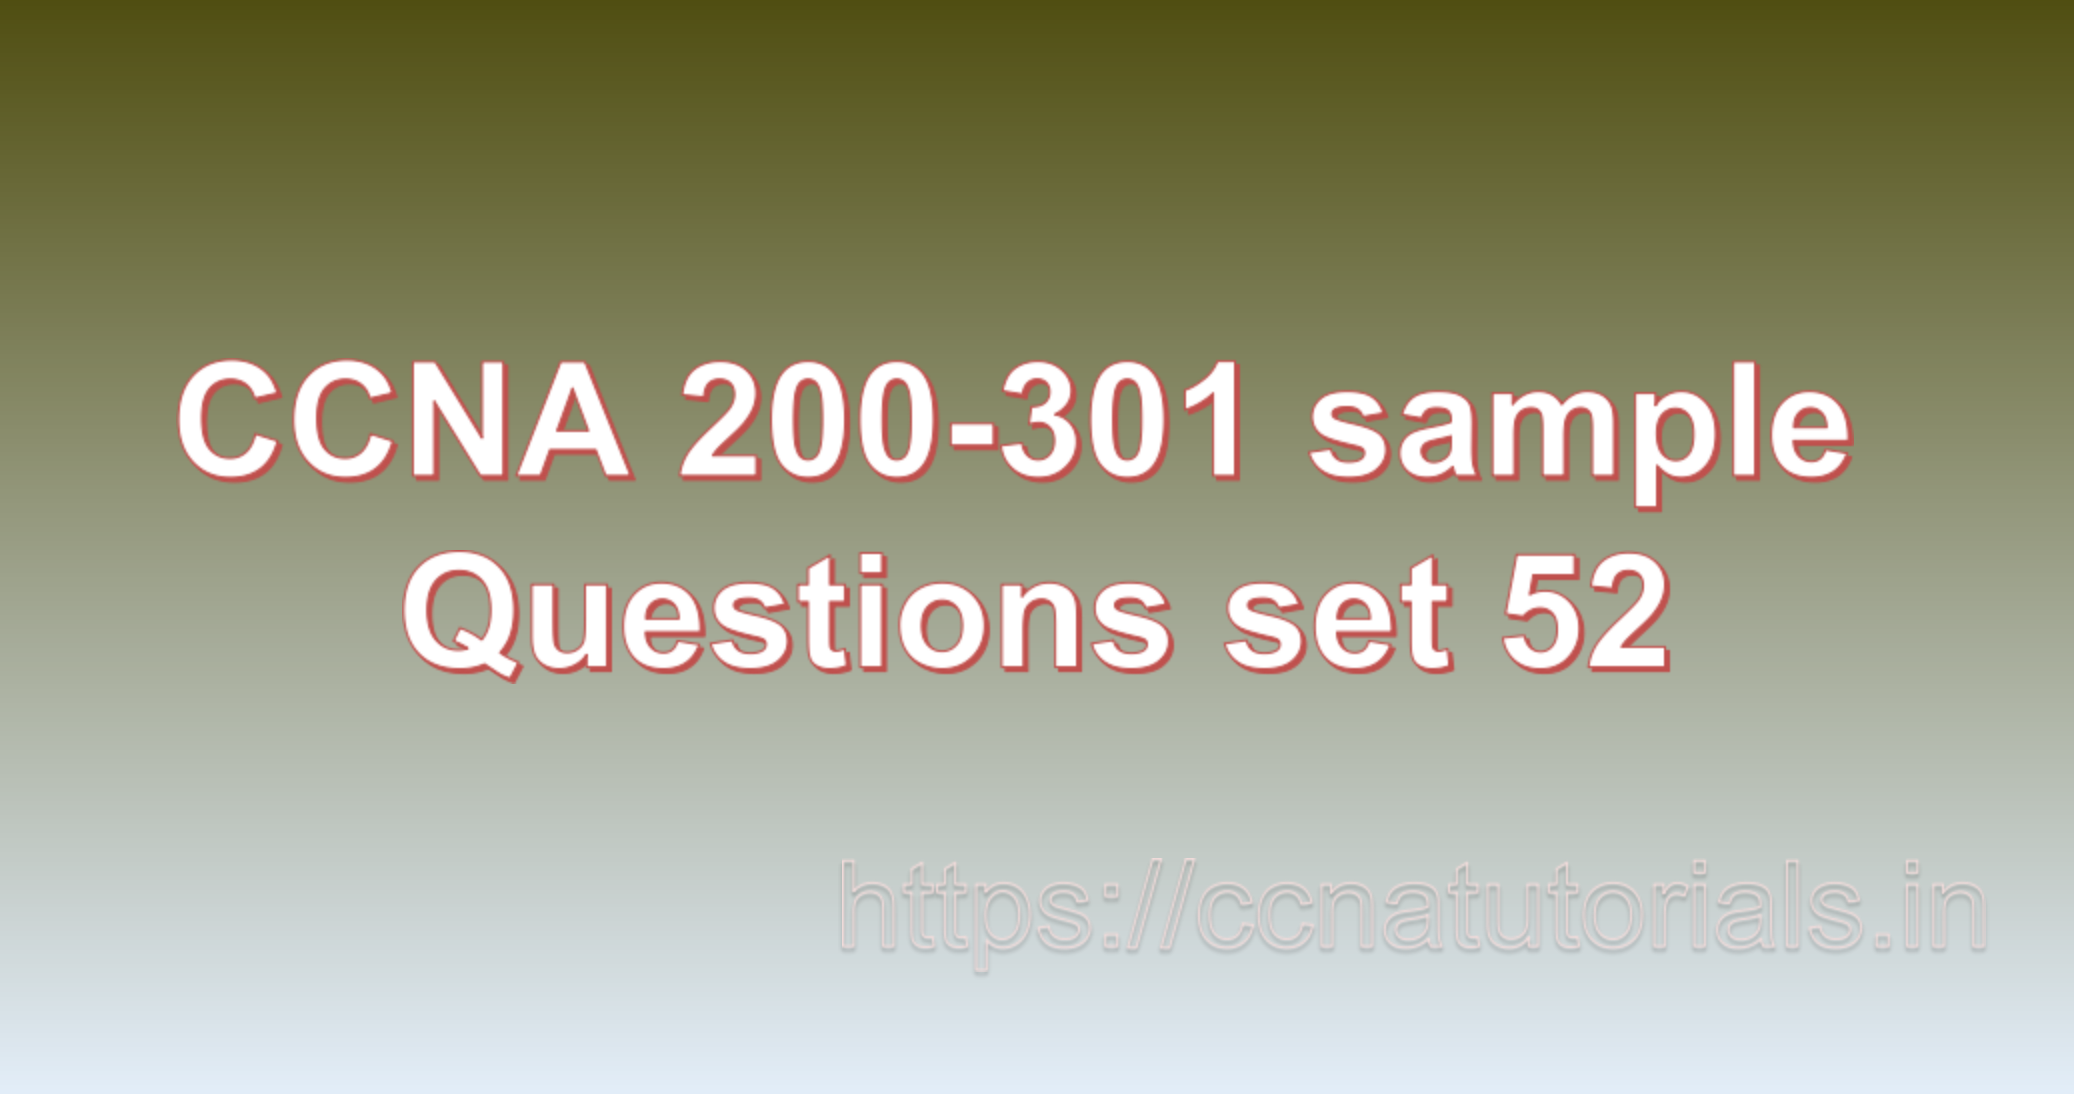 ccna sample questions set 52, ccna tutorials, CCNA Exam, ccna